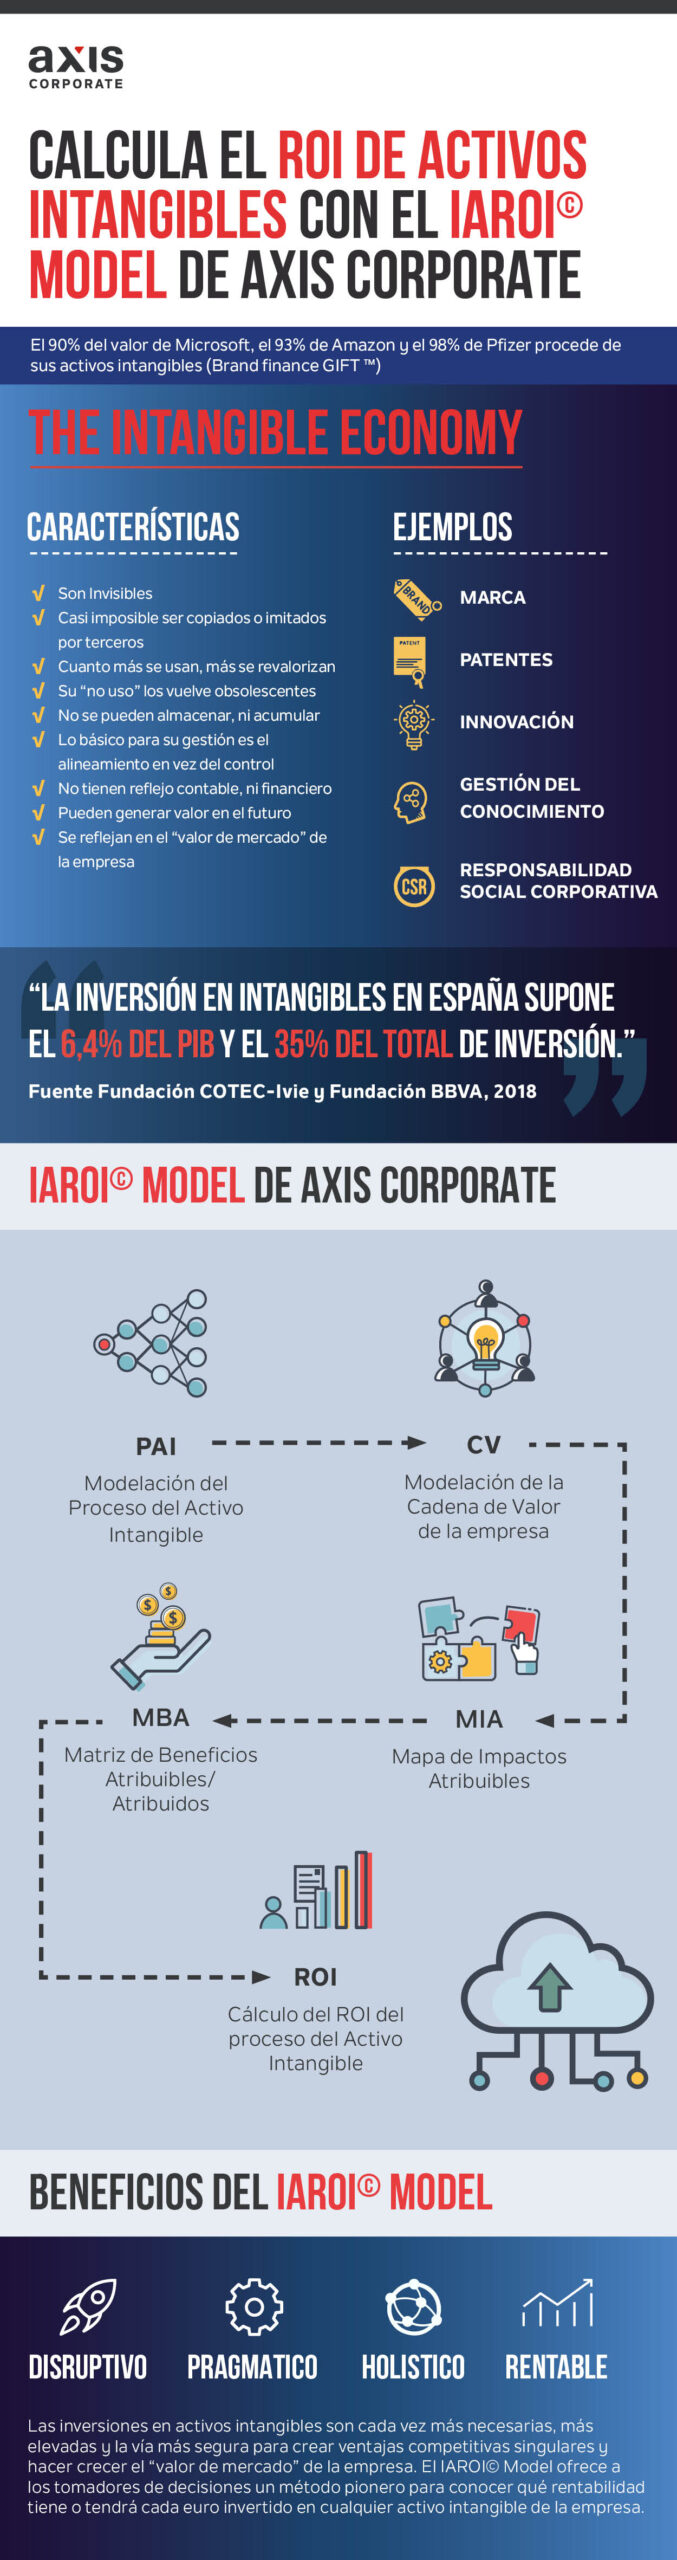 Calcula el ROI de activos Intangibles con el IAROI© Model